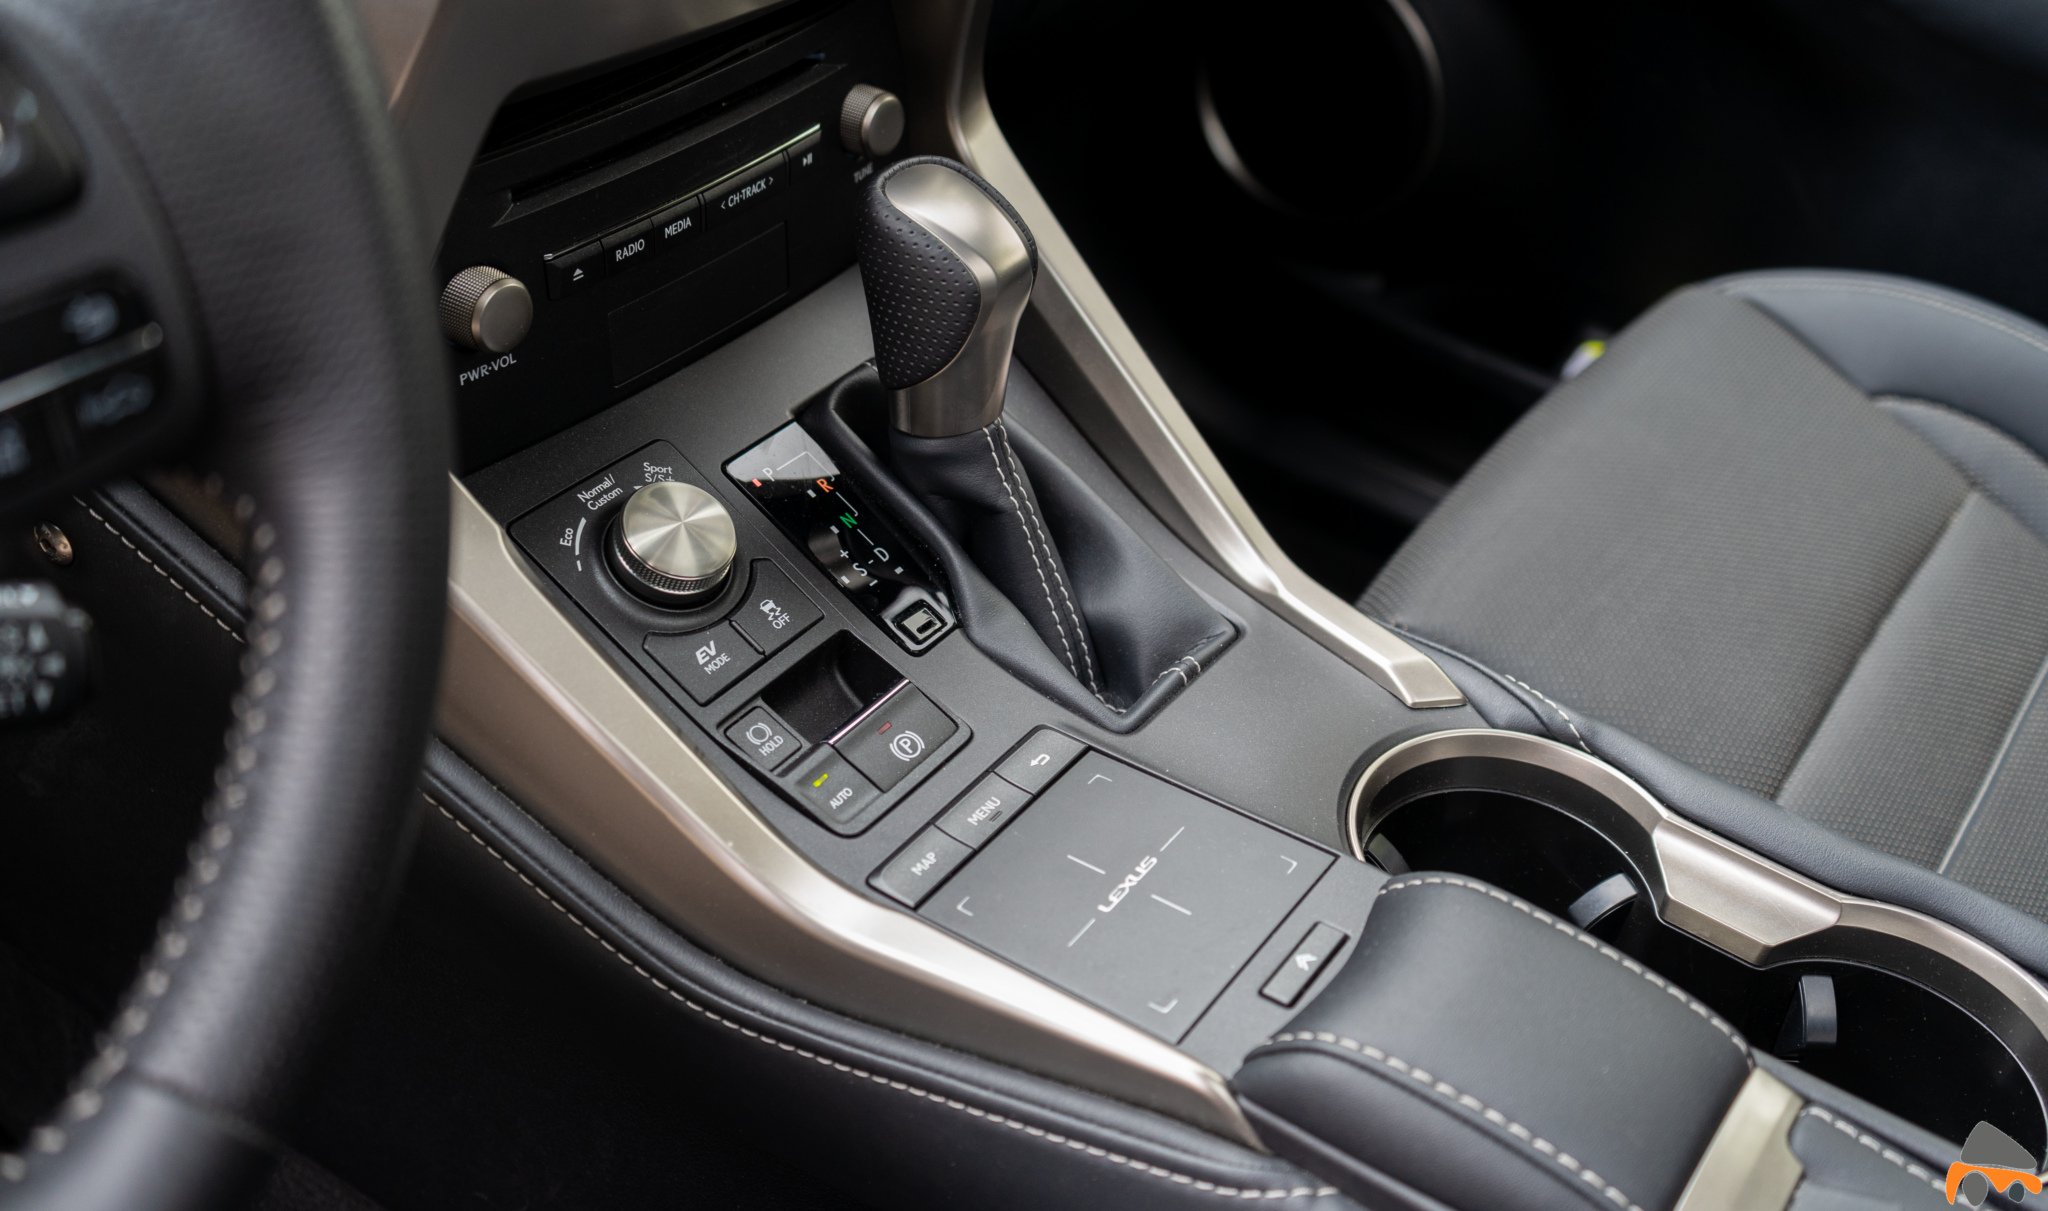 Consola central Lexus NX 300h - Lexus NX 300h 4X4 F-Sport: El SUV híbrido de lujo muy llamativo